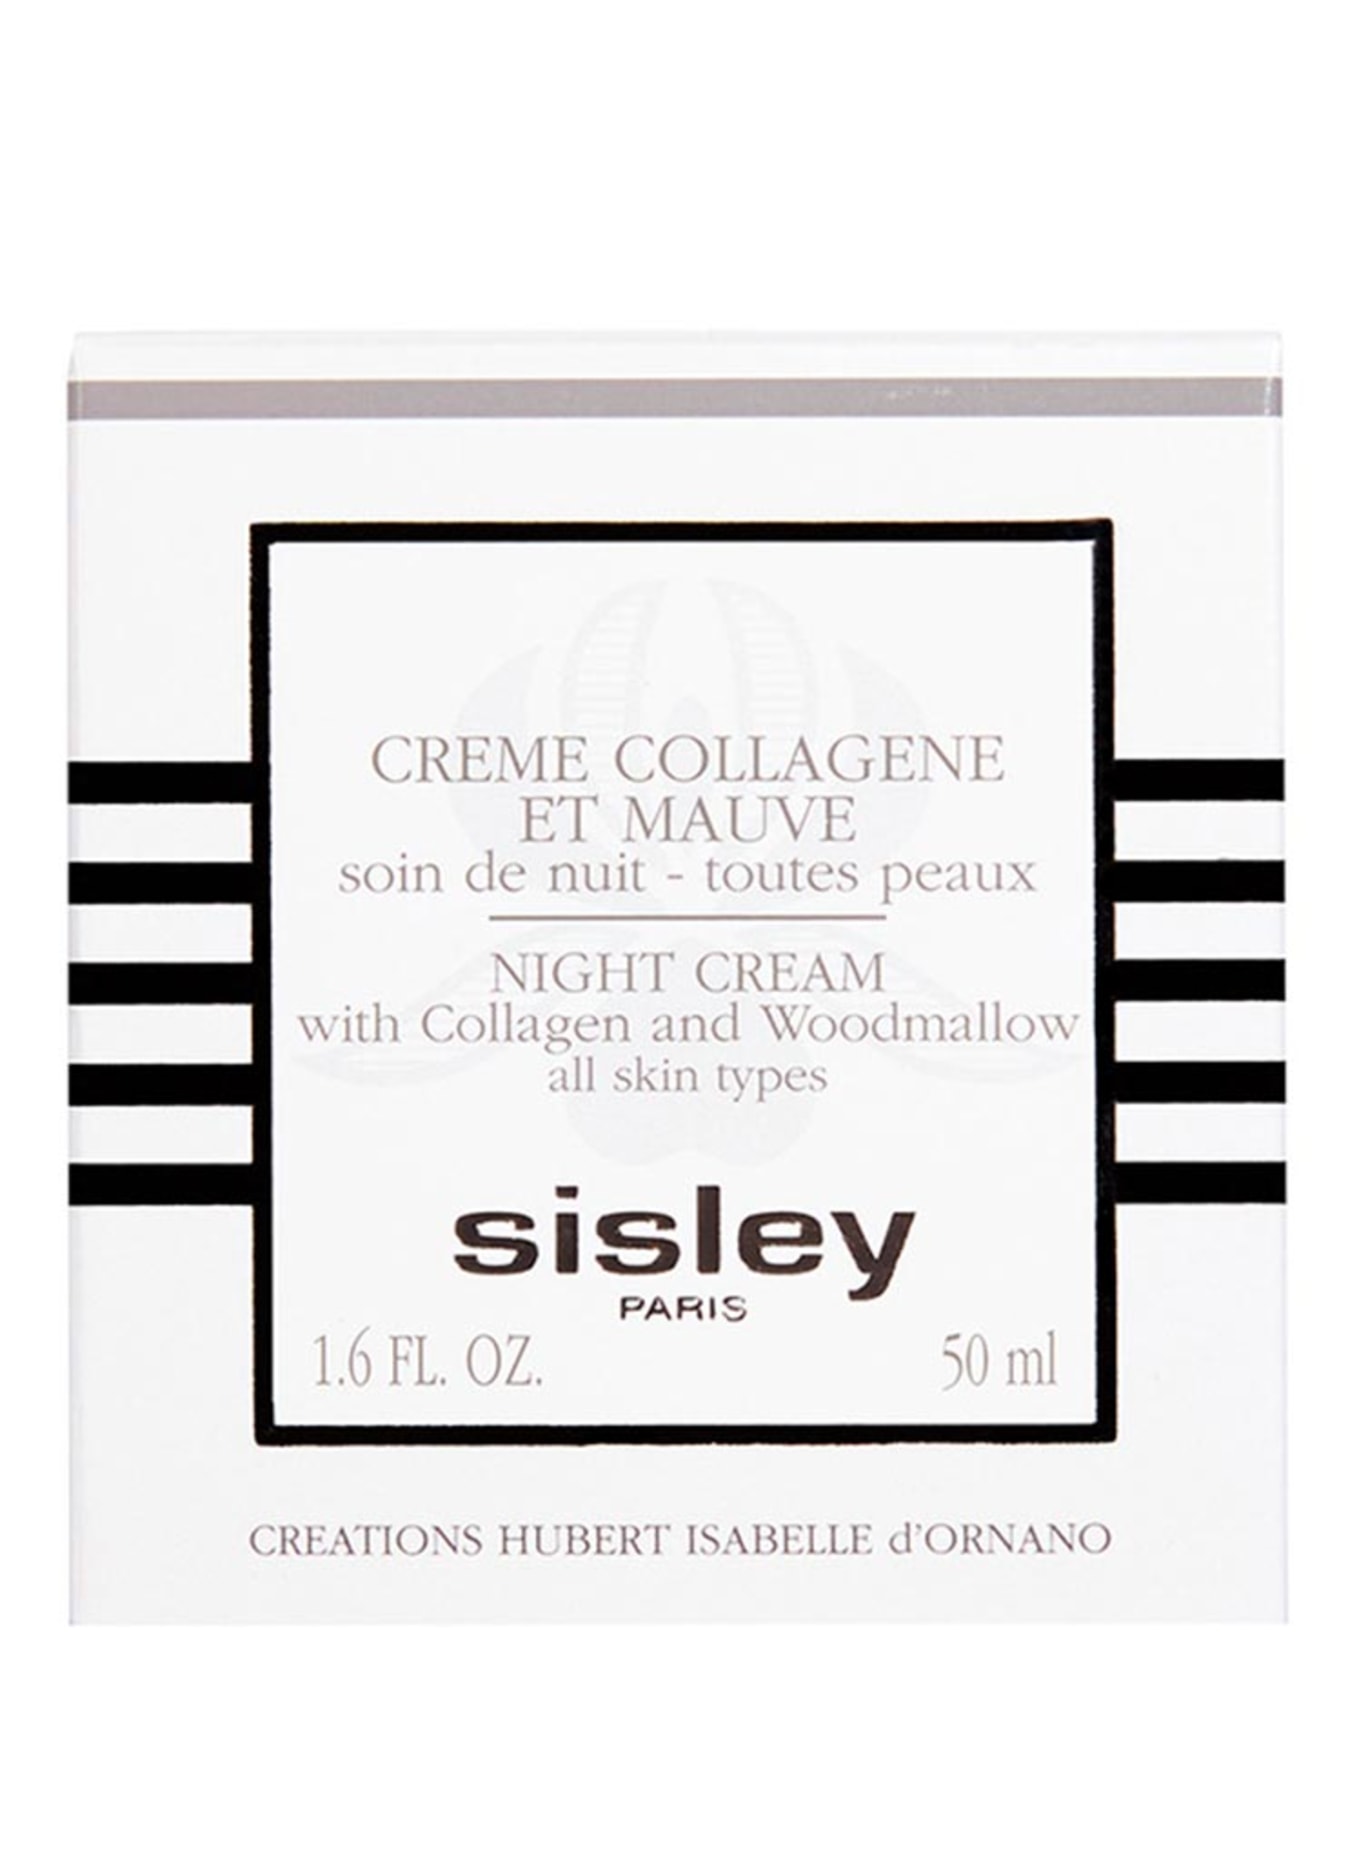 sisley Paris CRÈME COLLAGÈNE ET MAUVE (Obrázek 2)